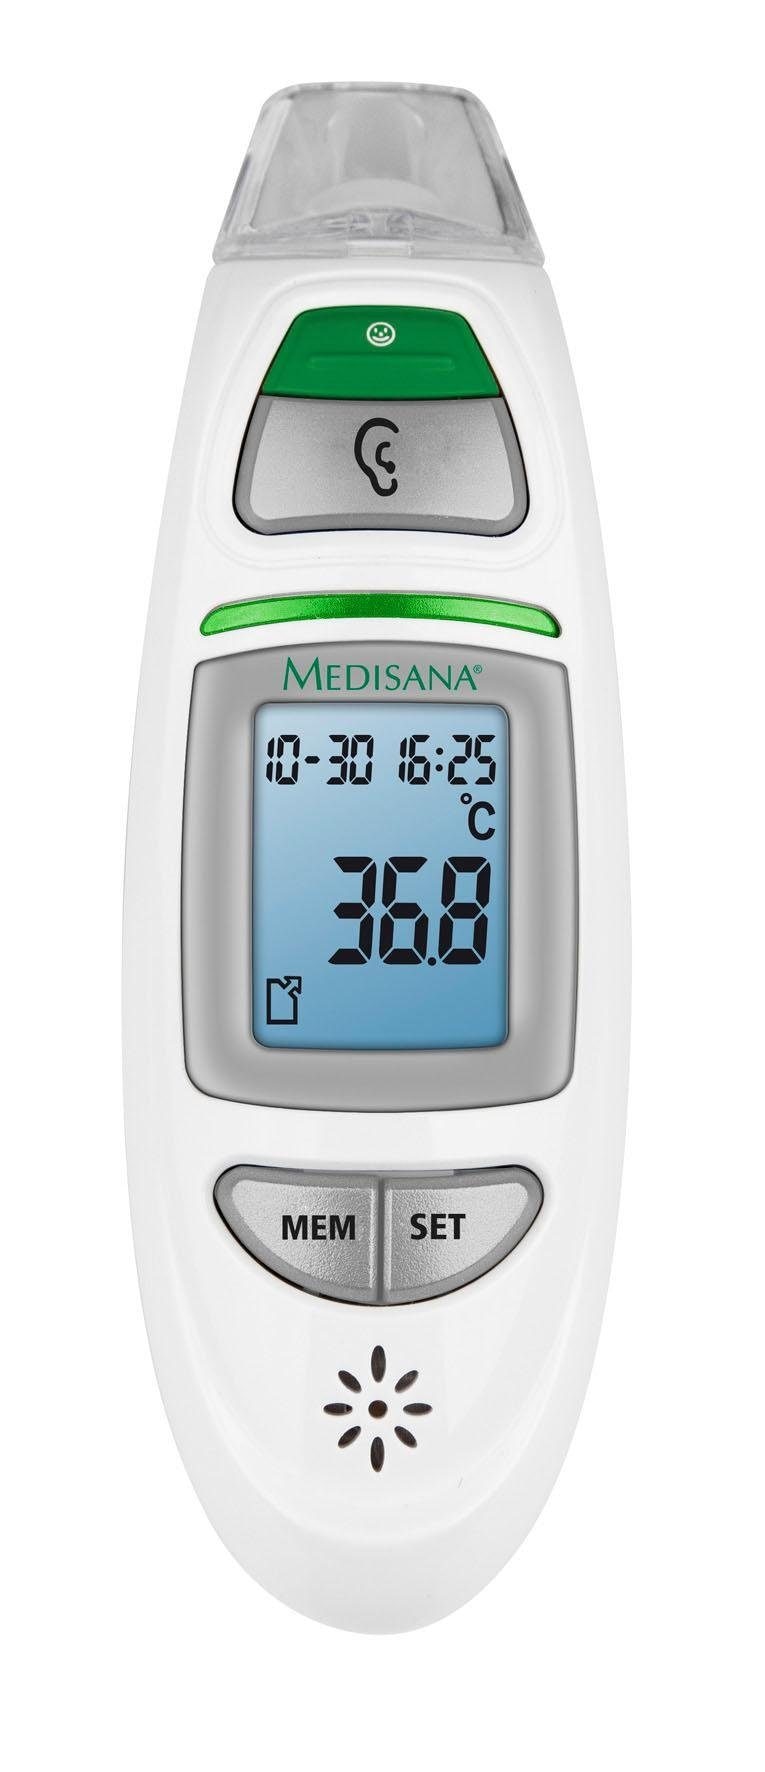 Jahren XXL 750« 3 mit Infrarot-Fieberthermometer Medisana »TM Garantie